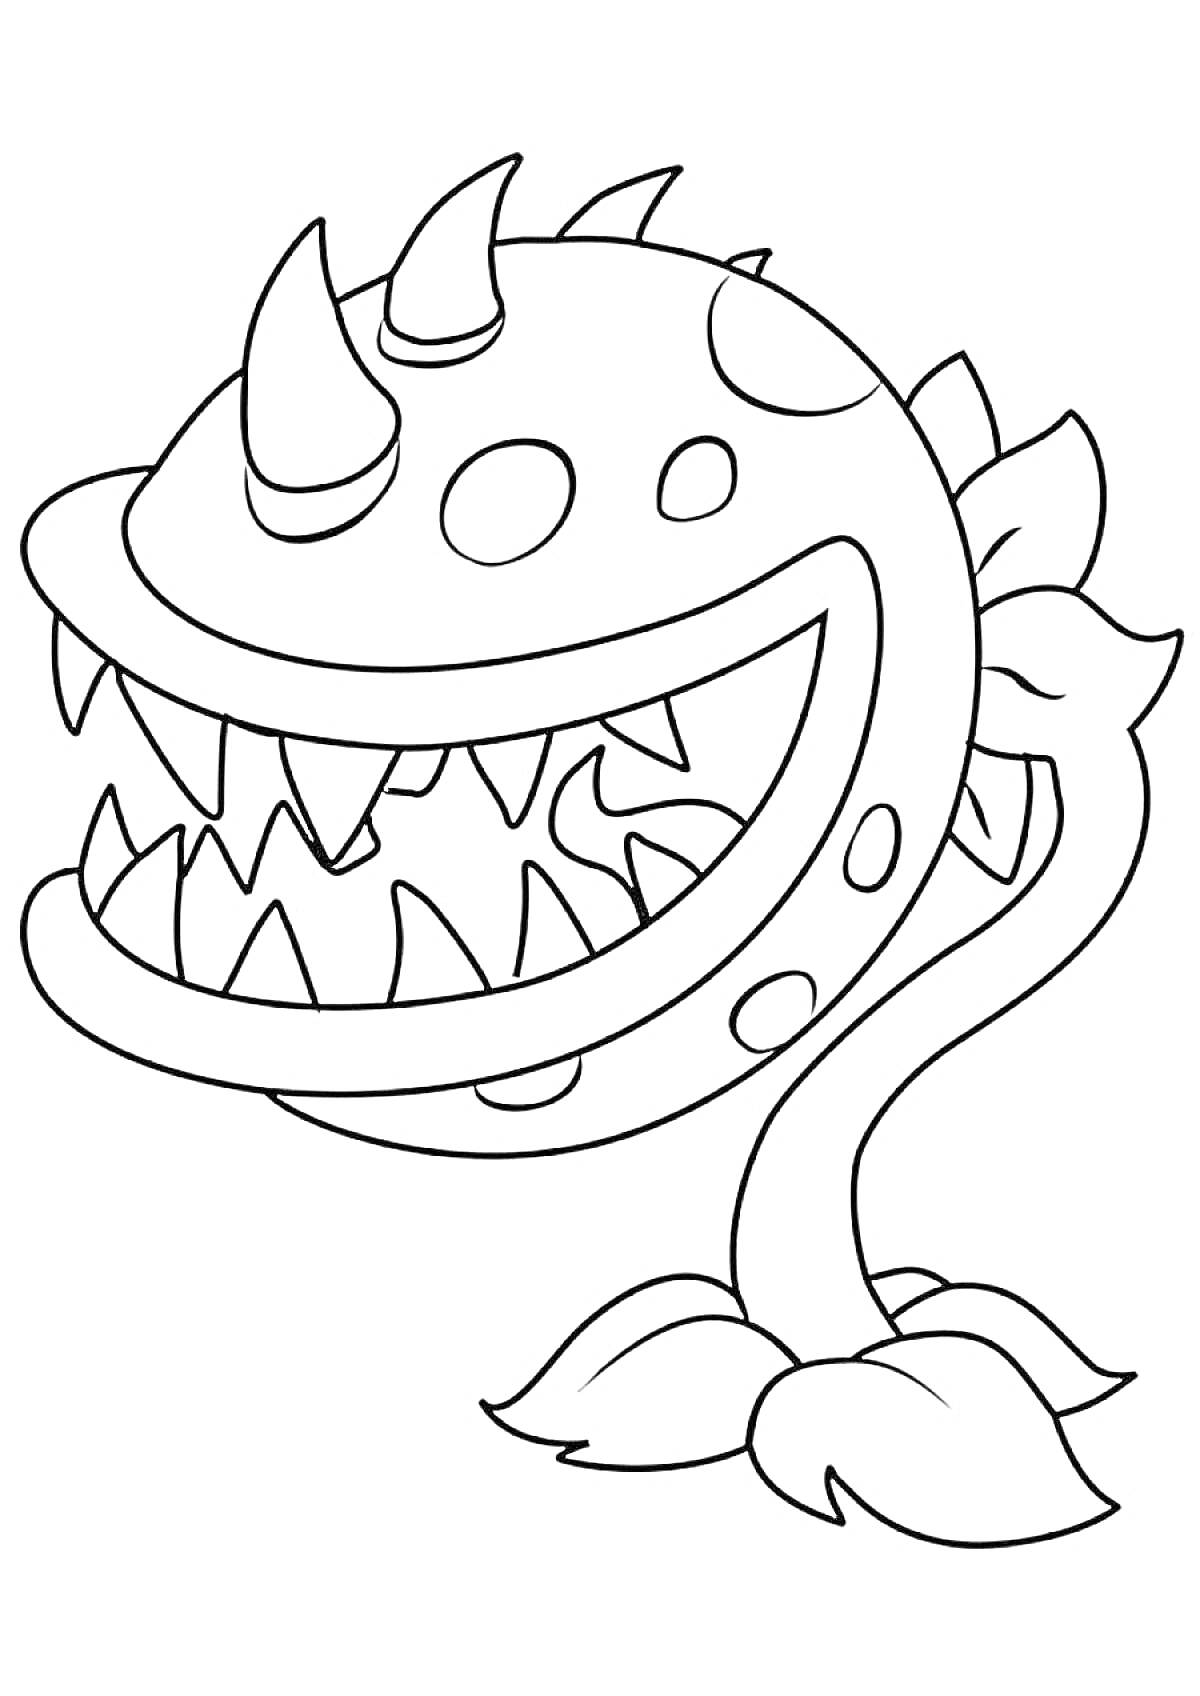 Раскраска Хищное растение с шипами и острыми зубами